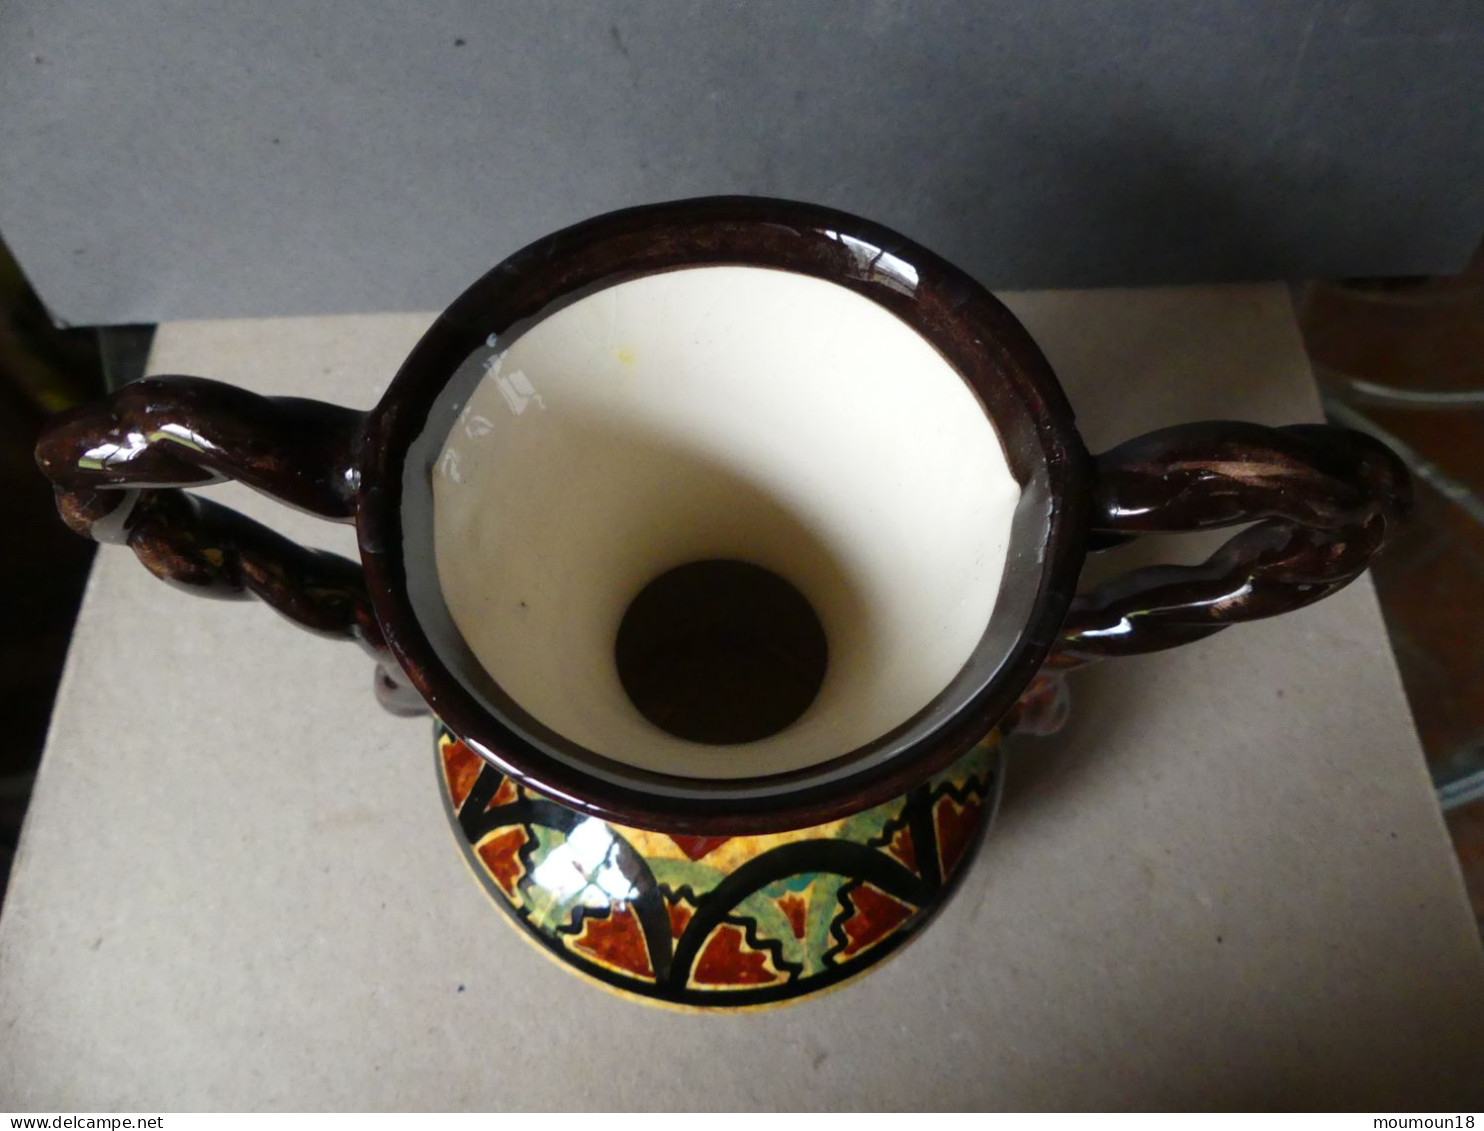 Céramique vase à anses St-Jean-de-Bretagne Paimpol